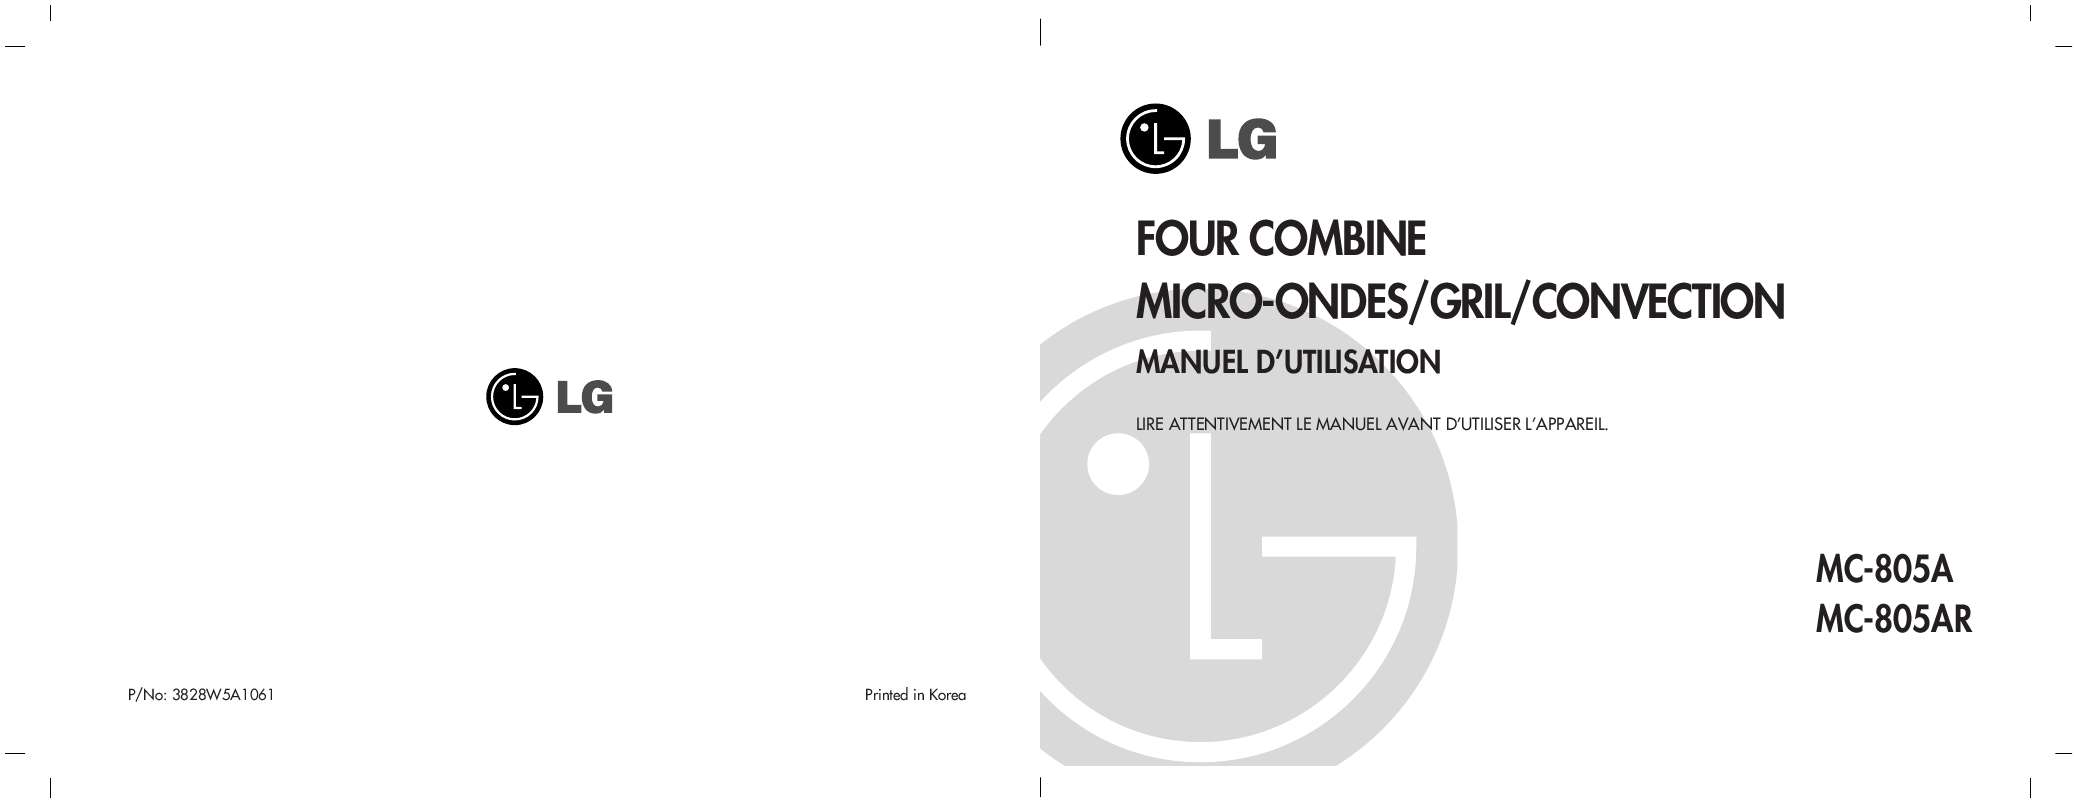 Guide utilisation LG MC-805ARS de la marque LG